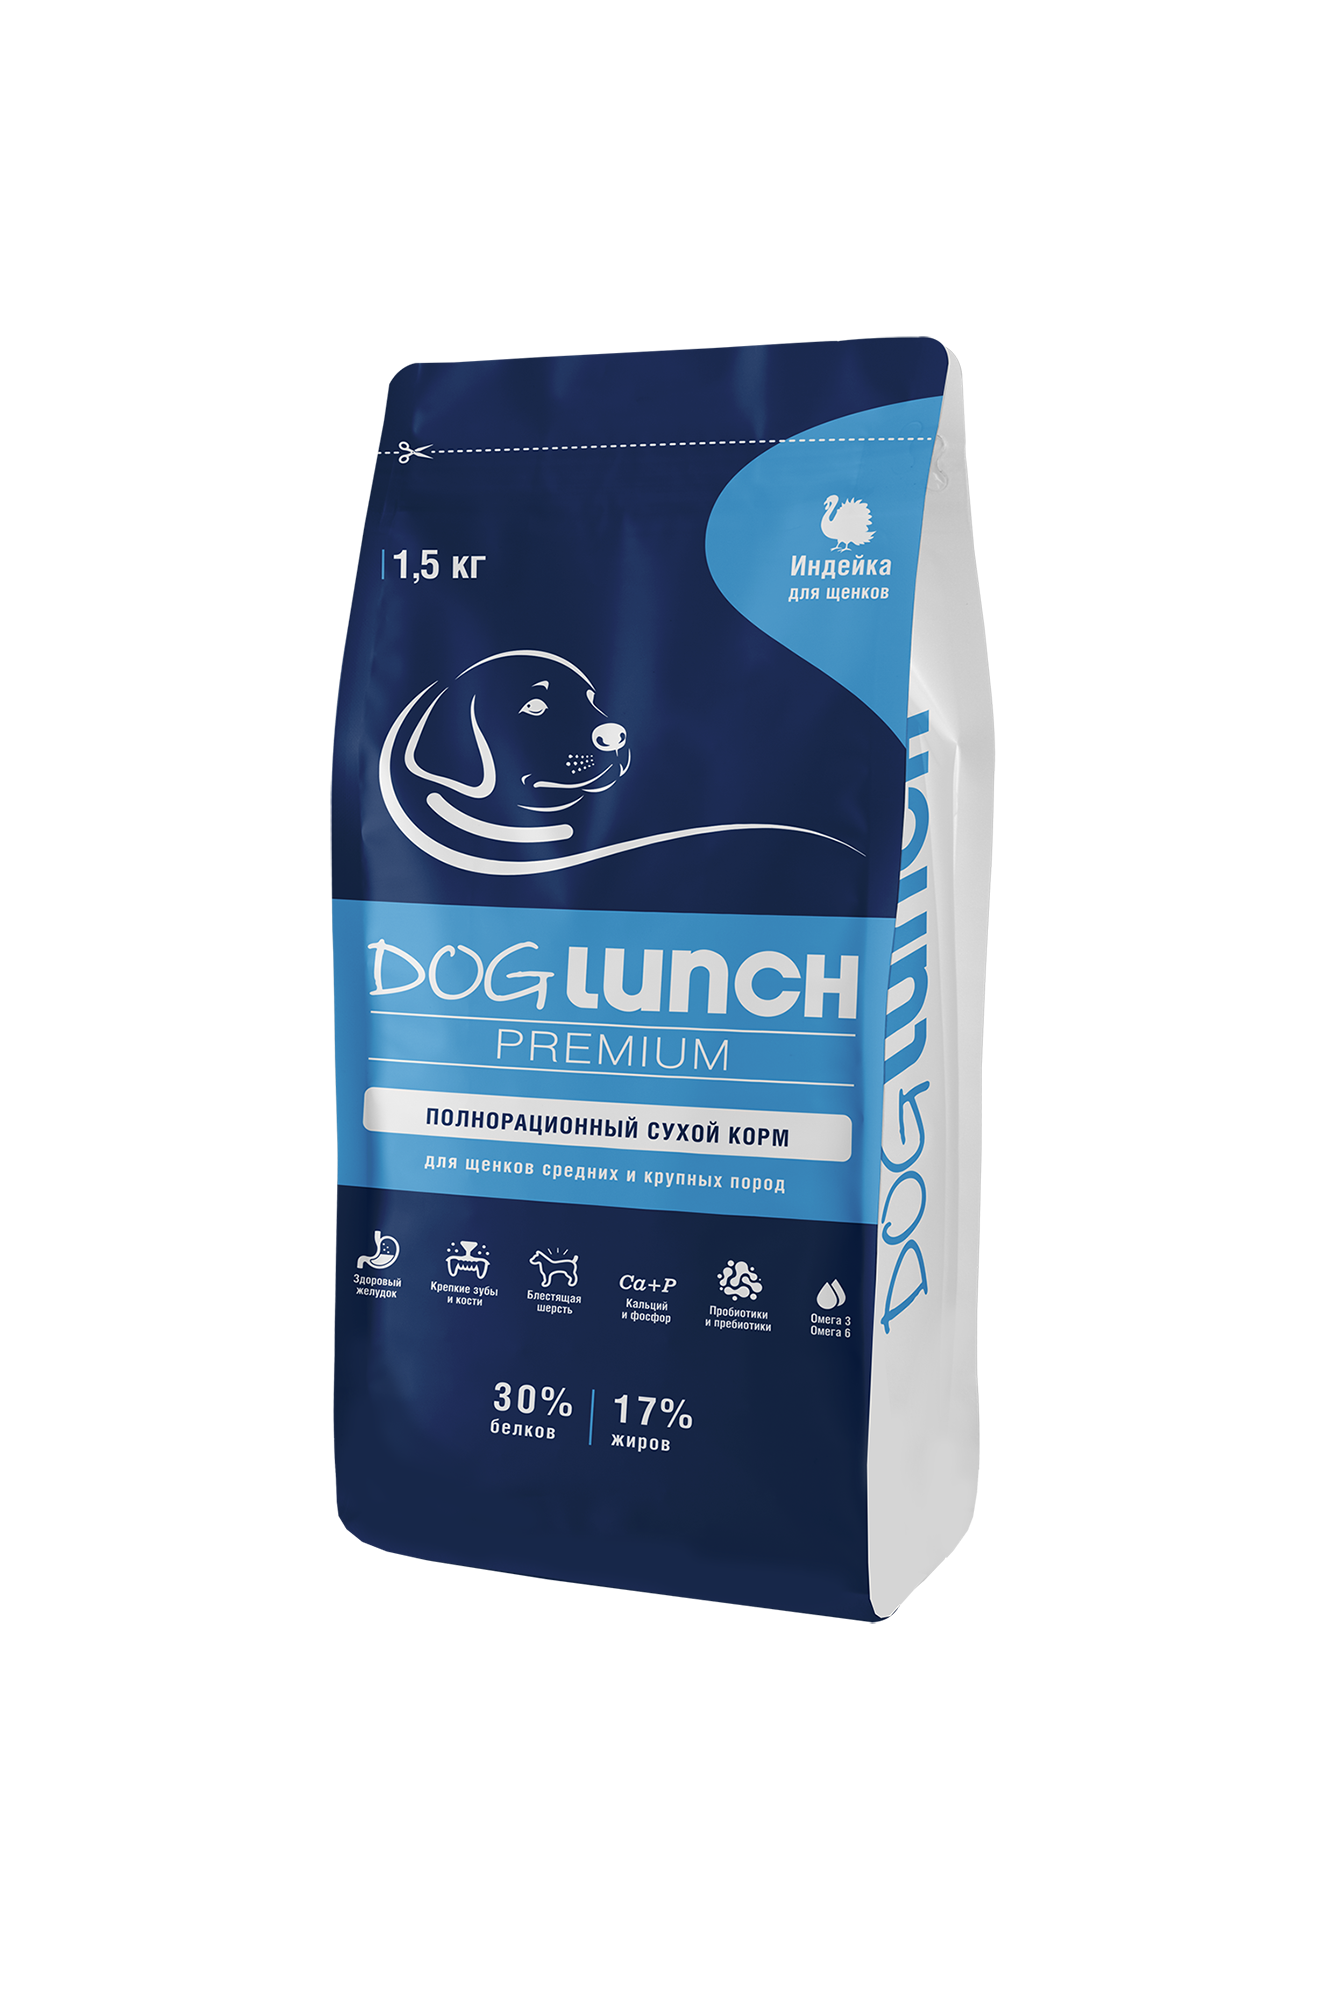 Сухой корм для щенков DogLunch Premium с индейкой, 1,5 кг